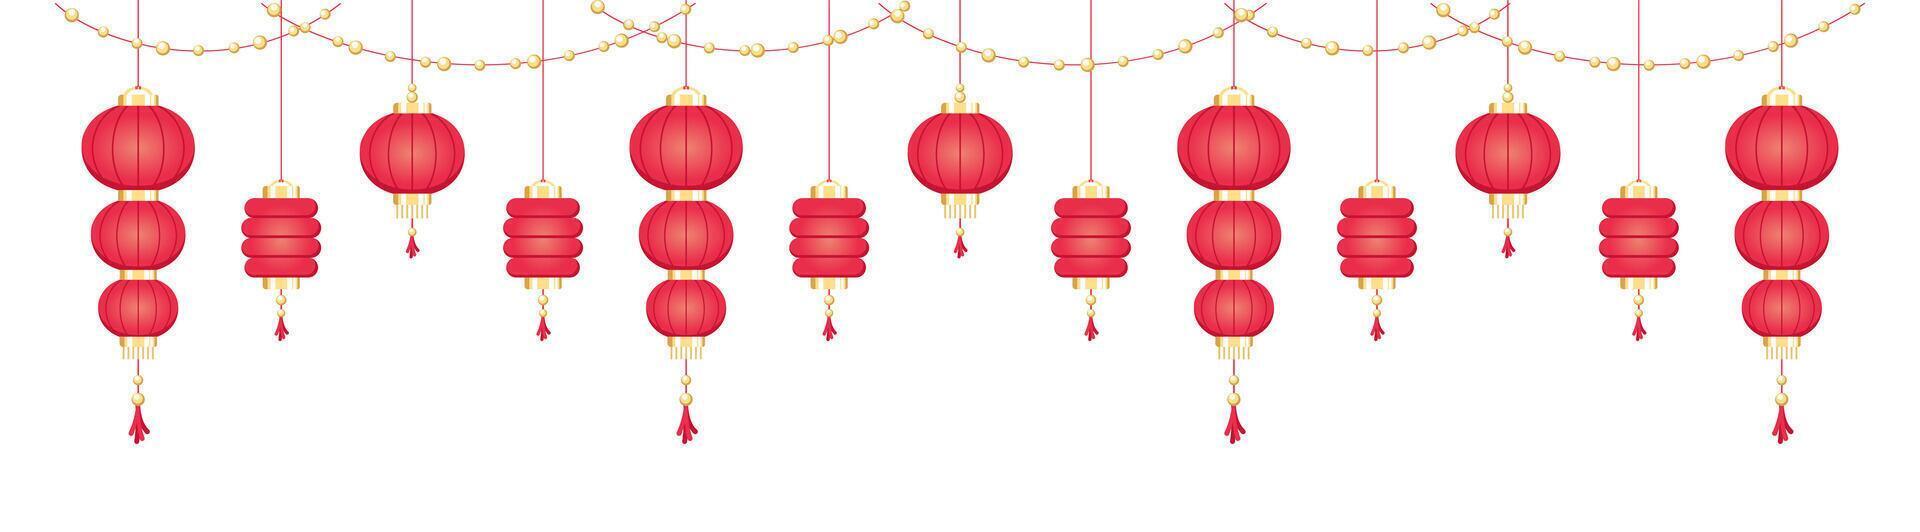 colgando chino linternas bandera borde, lunar nuevo año y mediados de otoño festival decoración gráfico vector